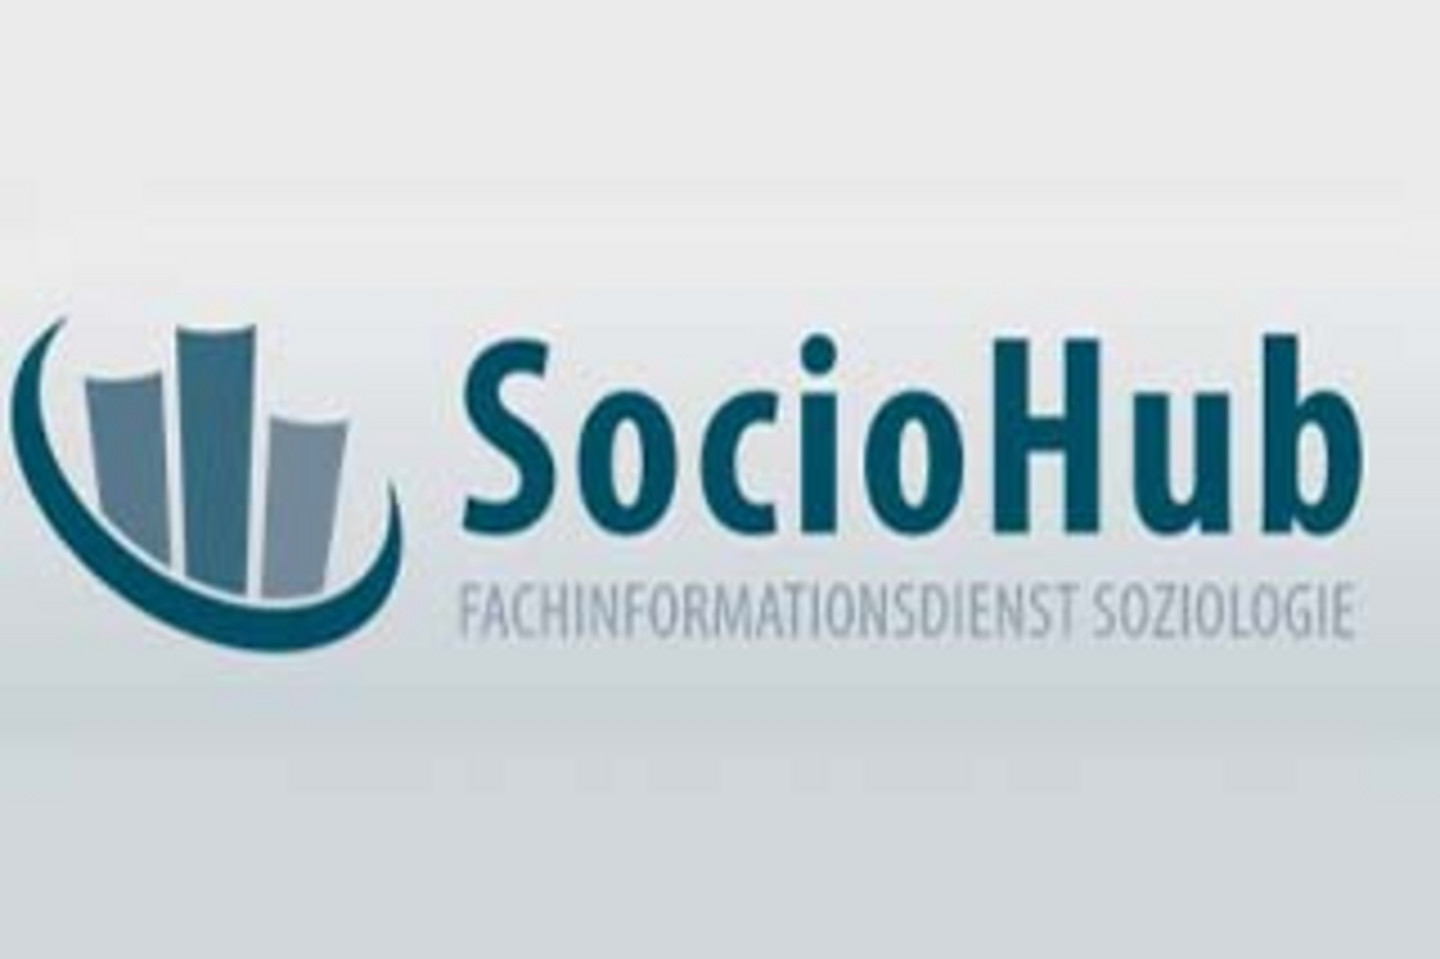 Logo von "SocioHub" - dem Fachinformationsdienst Soziologie.